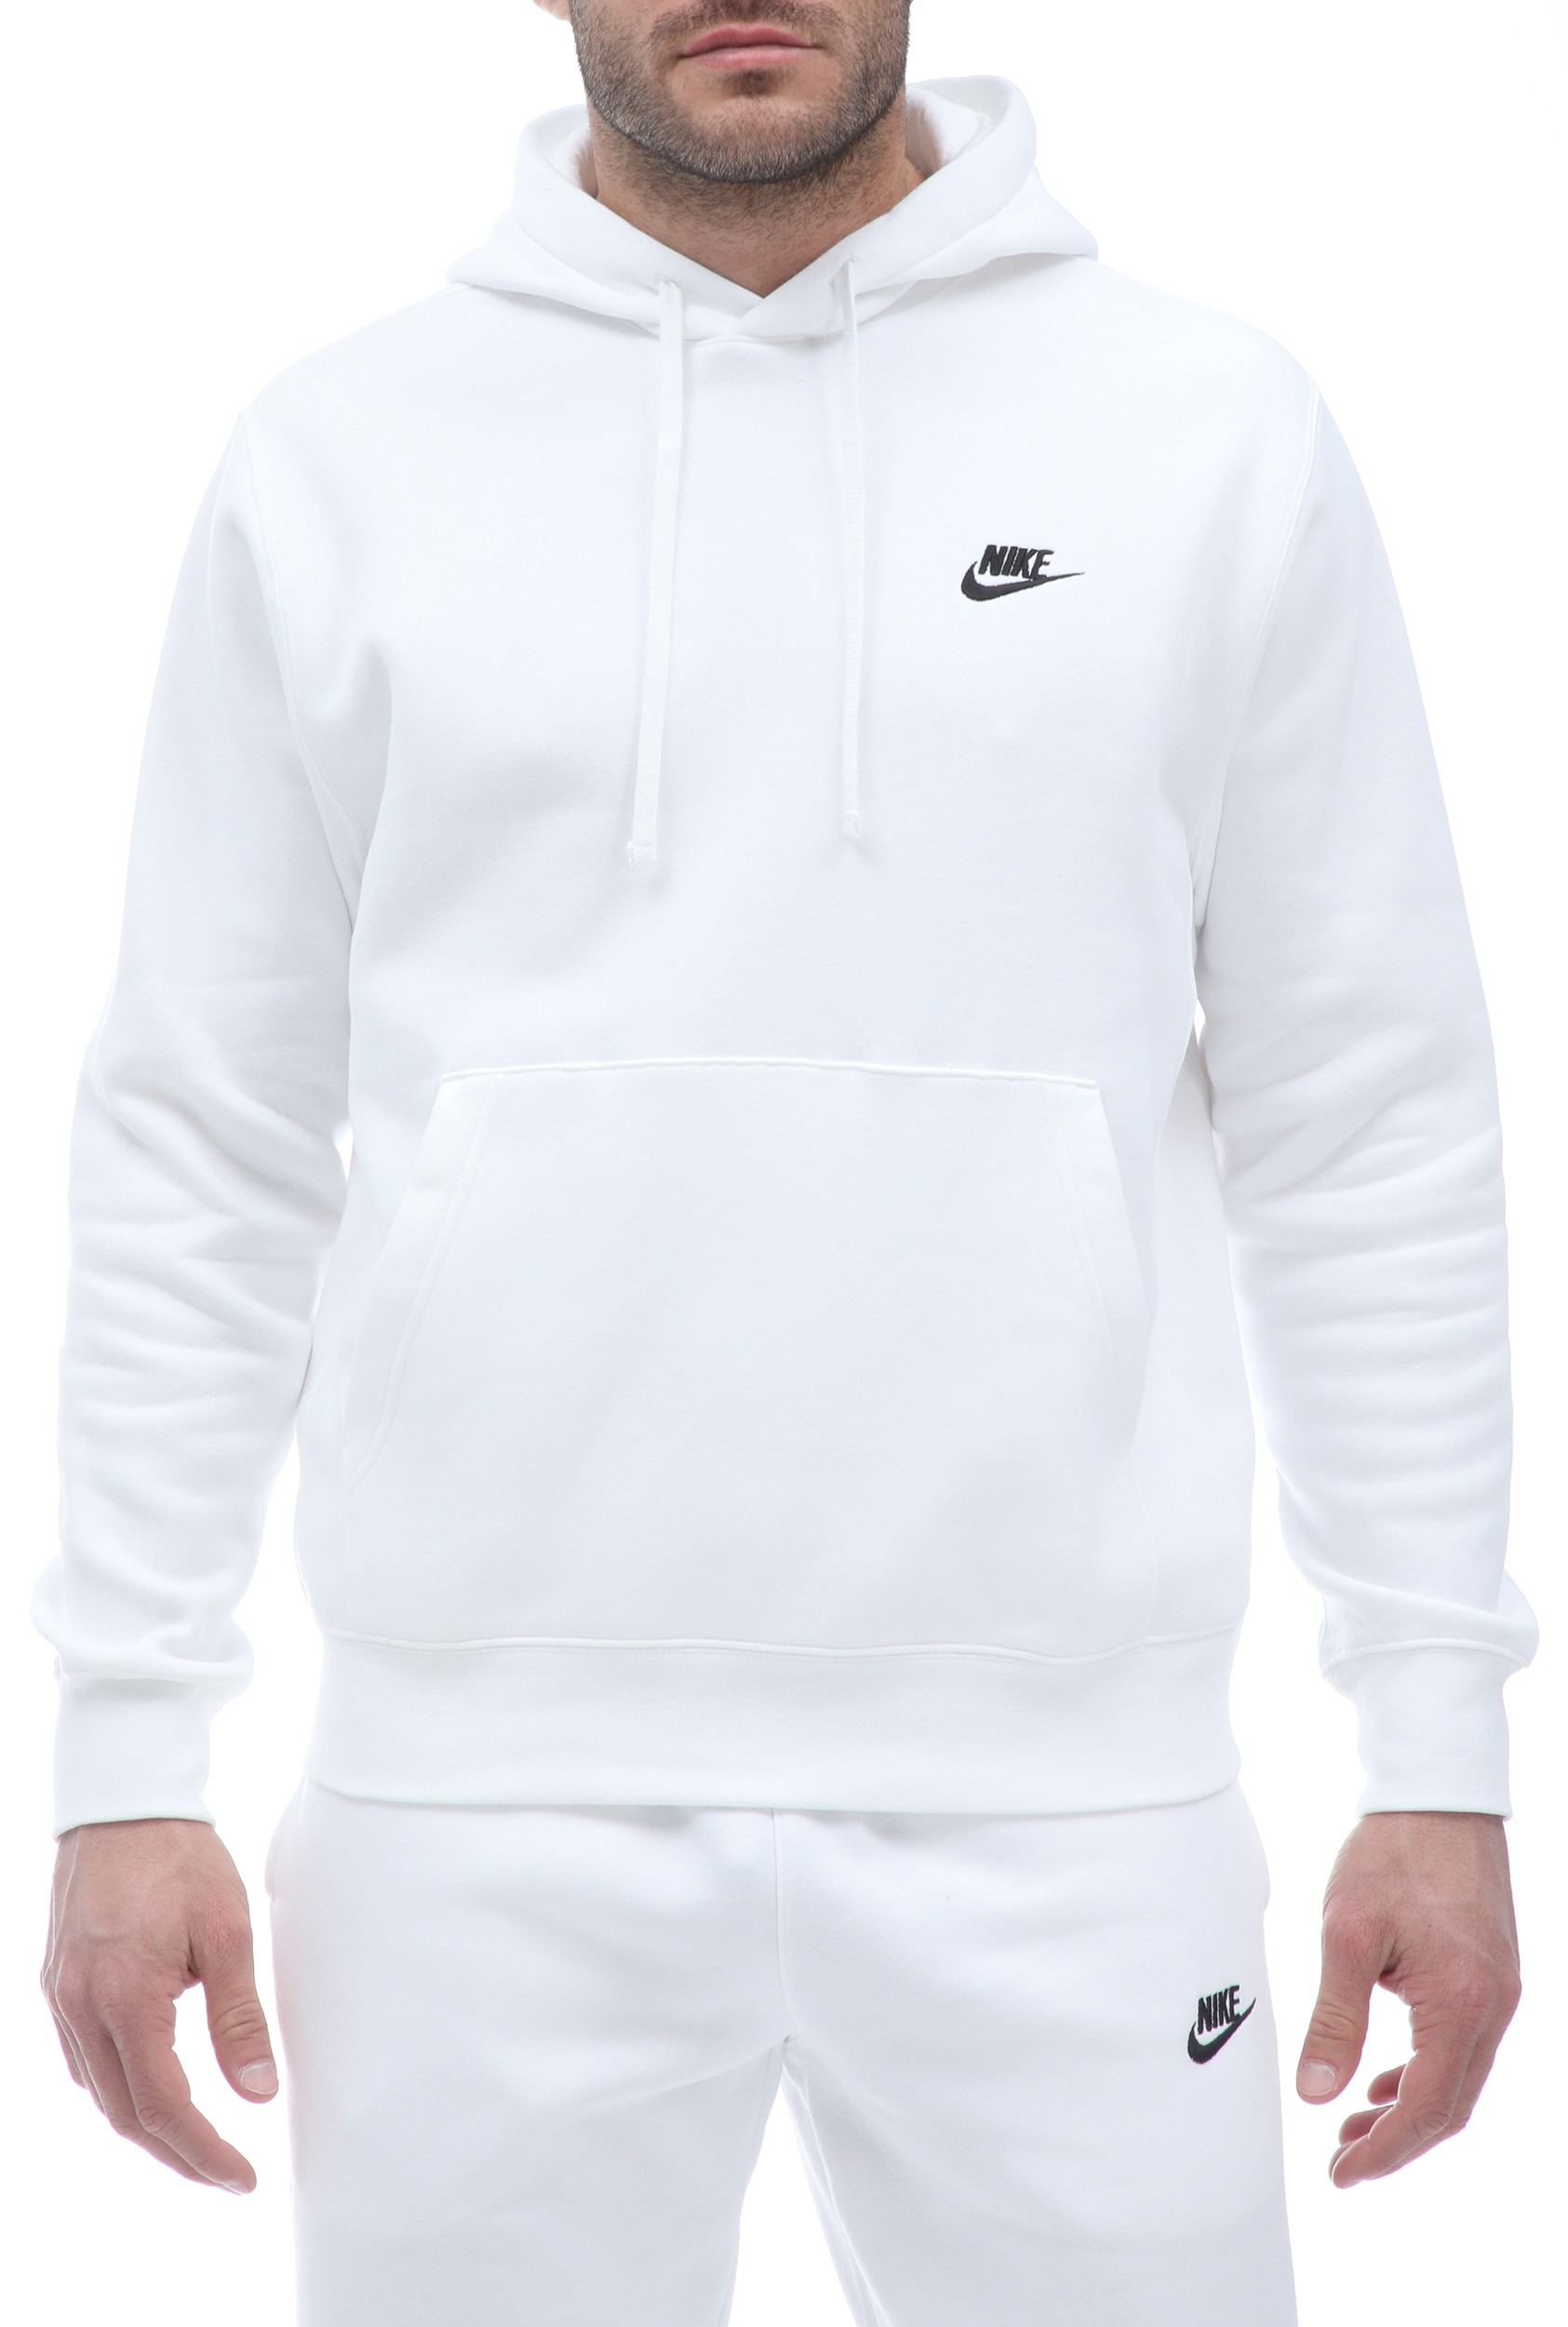 Ανδρικά/Ρούχα/Φούτερ/Μπλούζες NIKE - Ανδρική φούτερ μπλούζα NIKE CLUB HOODIE λευκή